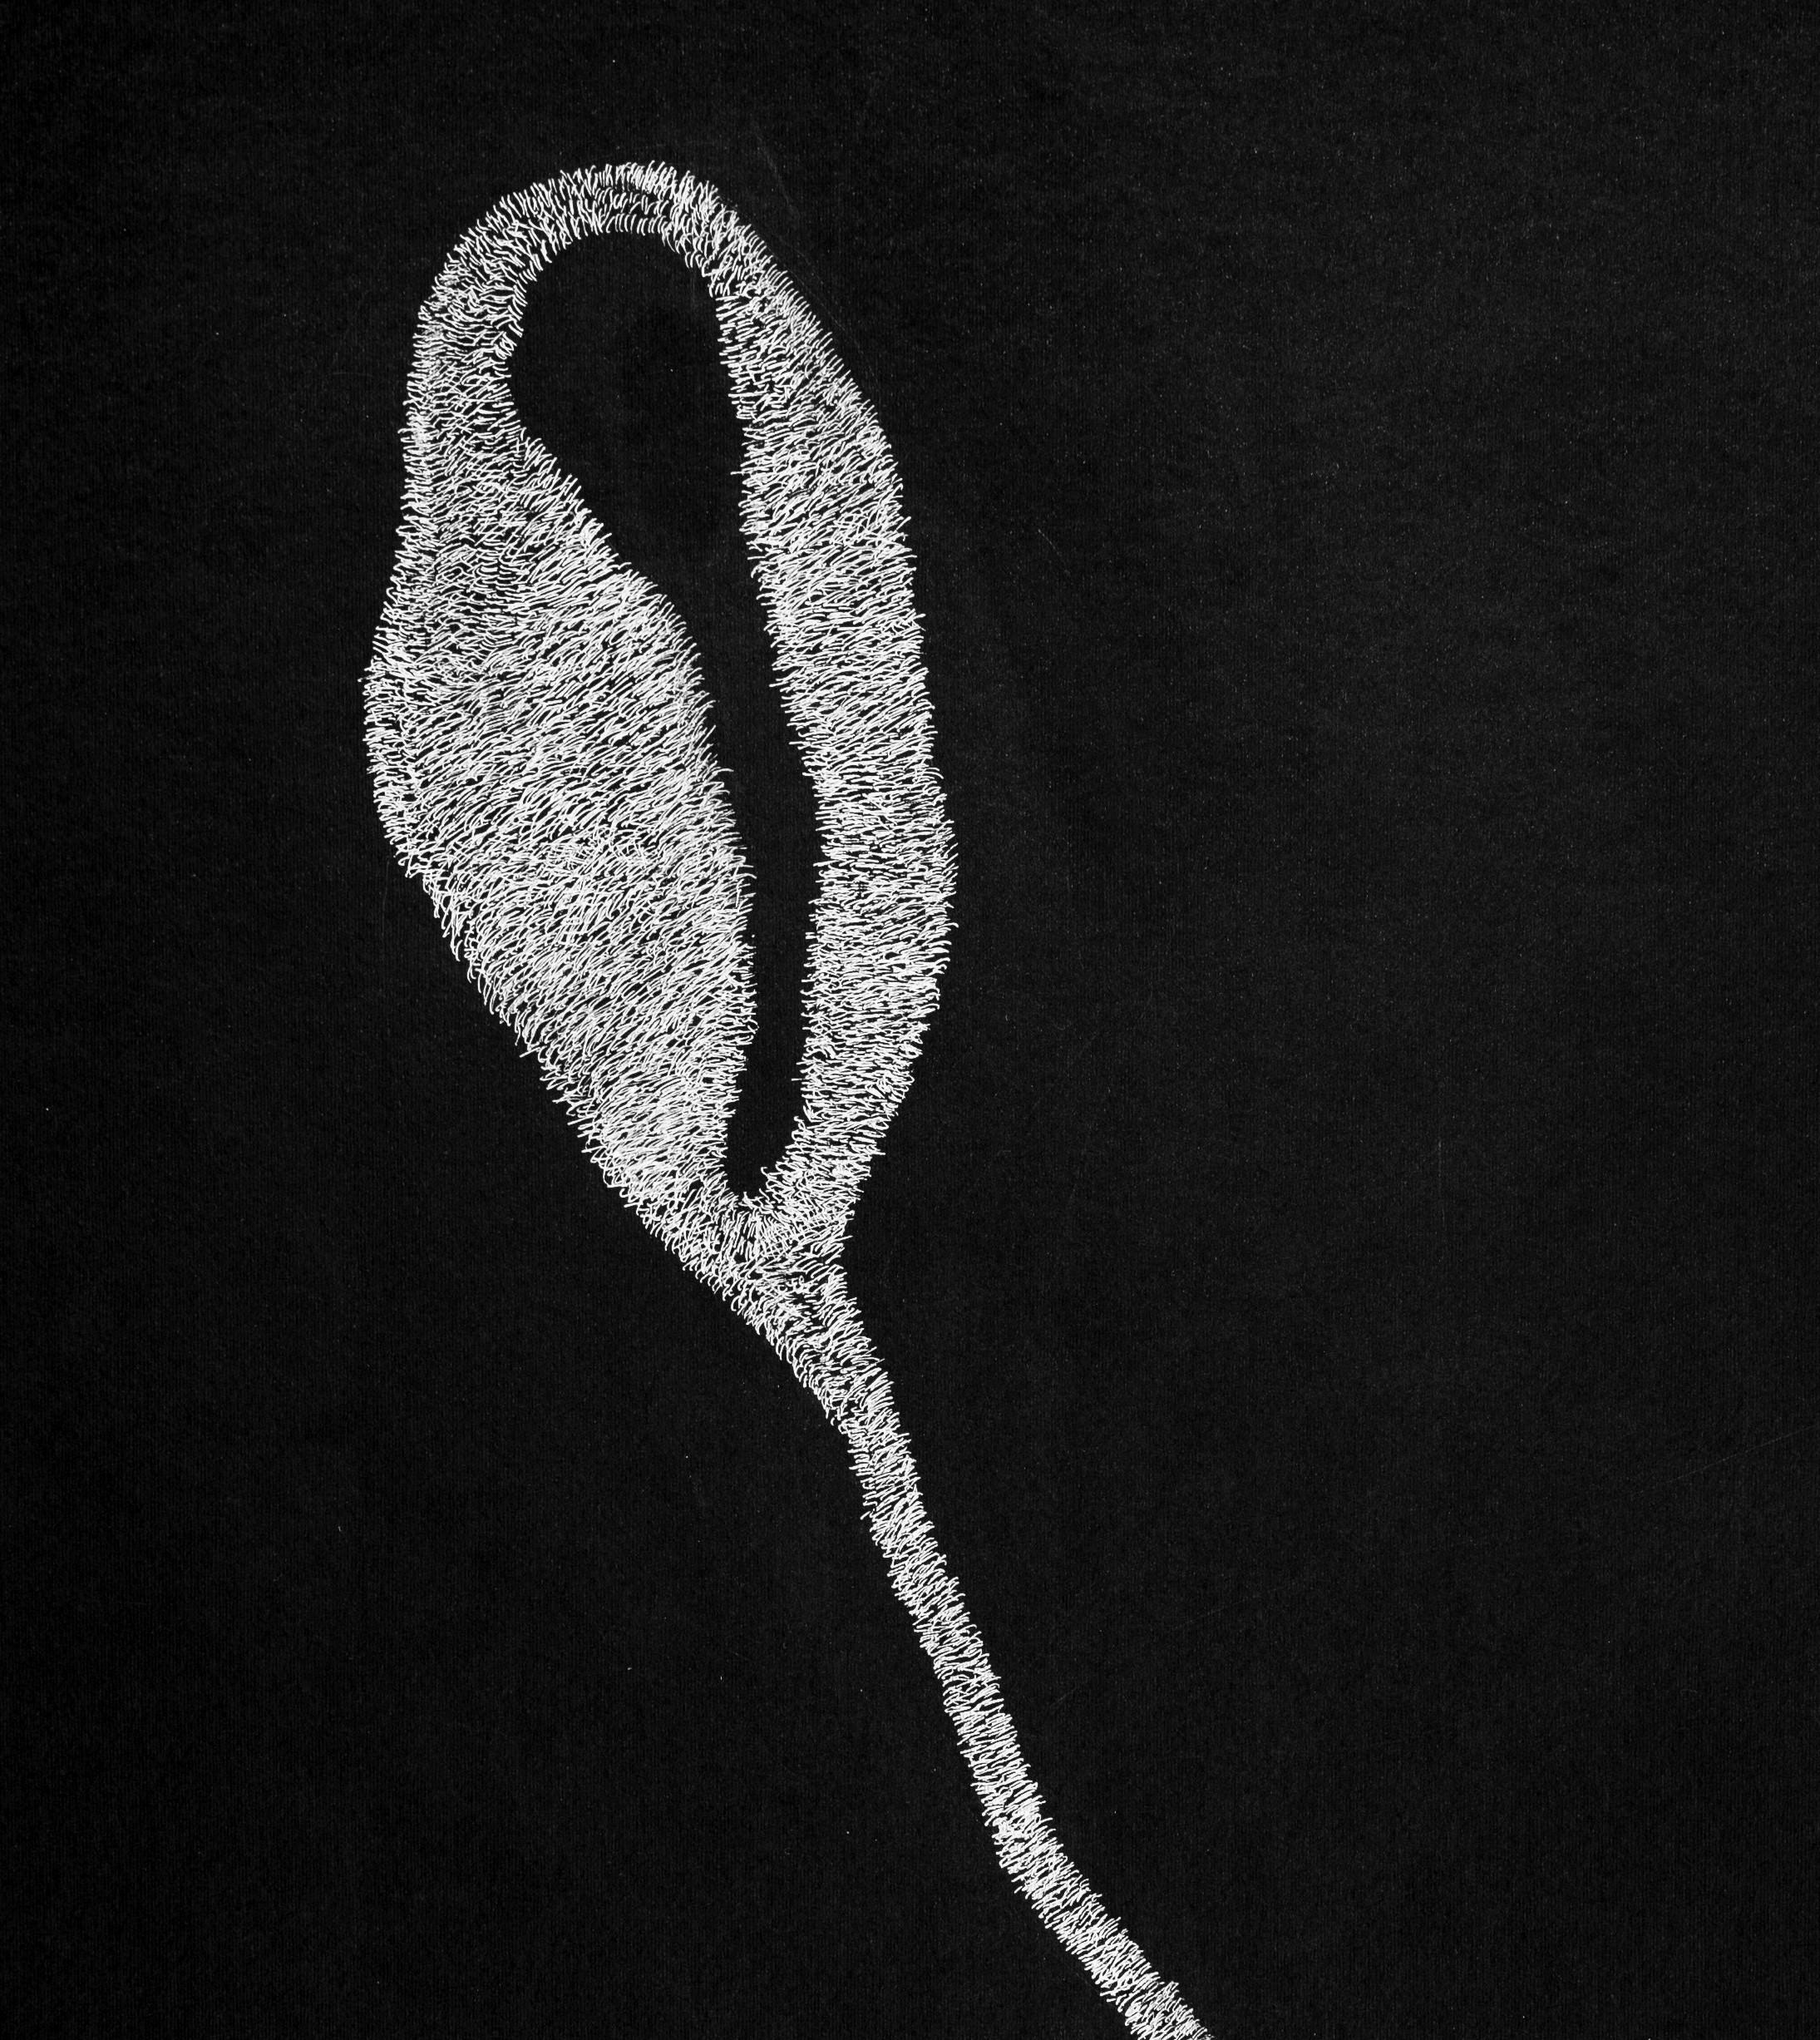 Geheimer Garten 2, 2019
Weiße Tinte auf schwarzem Karton (signiert)
39 3/8 H x 27 9/6 W in.
100 H x 70 B cm

Die von Alina Aldea signierten Zeichnungen zeigen die Akribie und Perfektion der mikroskopischen Beobachtung. Die Kreation von Alina Aldea